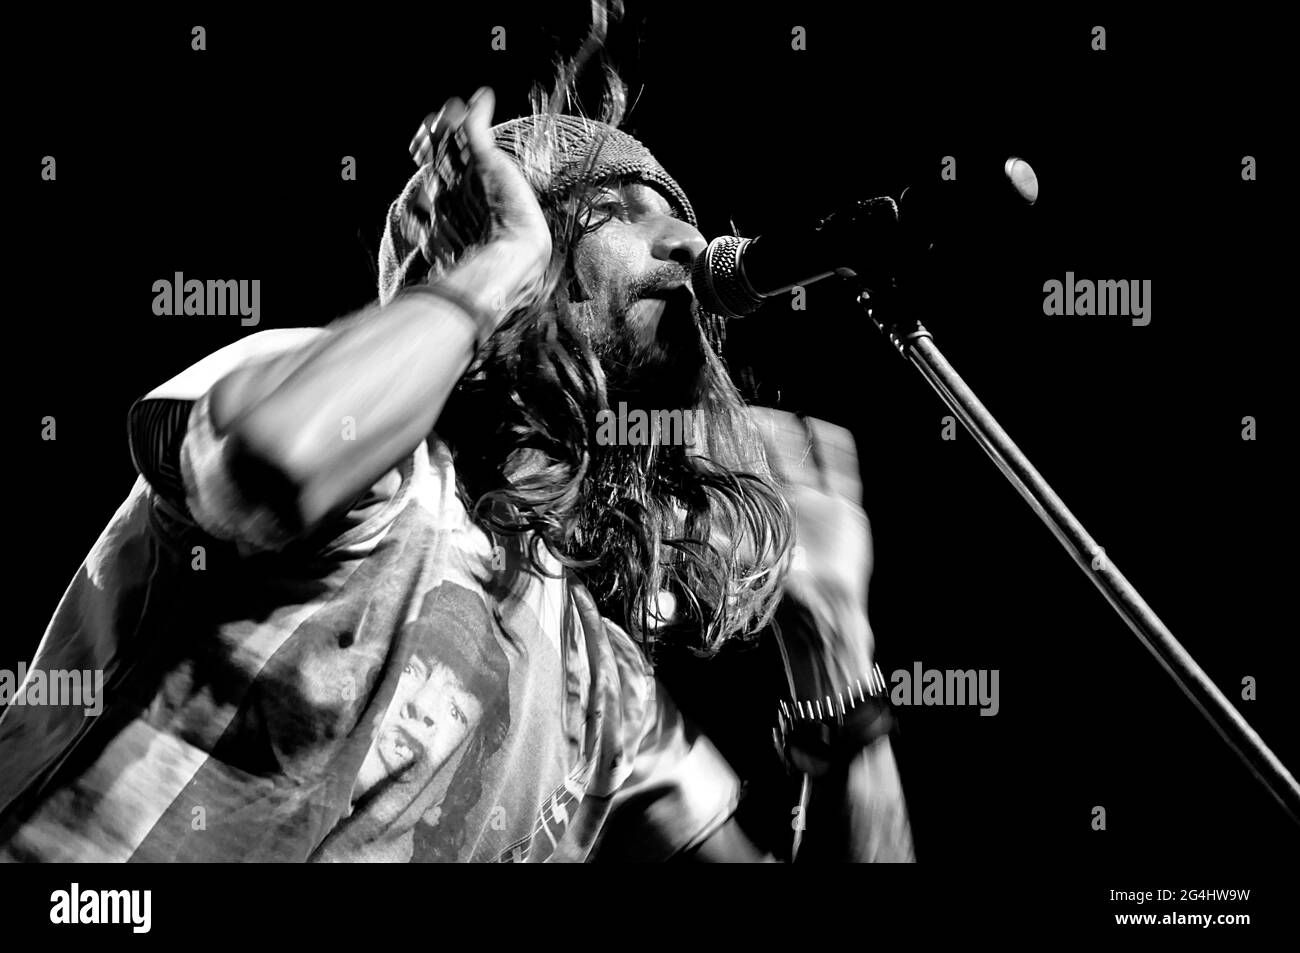 Armandinho e la sua band in concerto dal vivo a Groove, Buenos Aires, Argentina (17 agosto 2014). Foto Stock